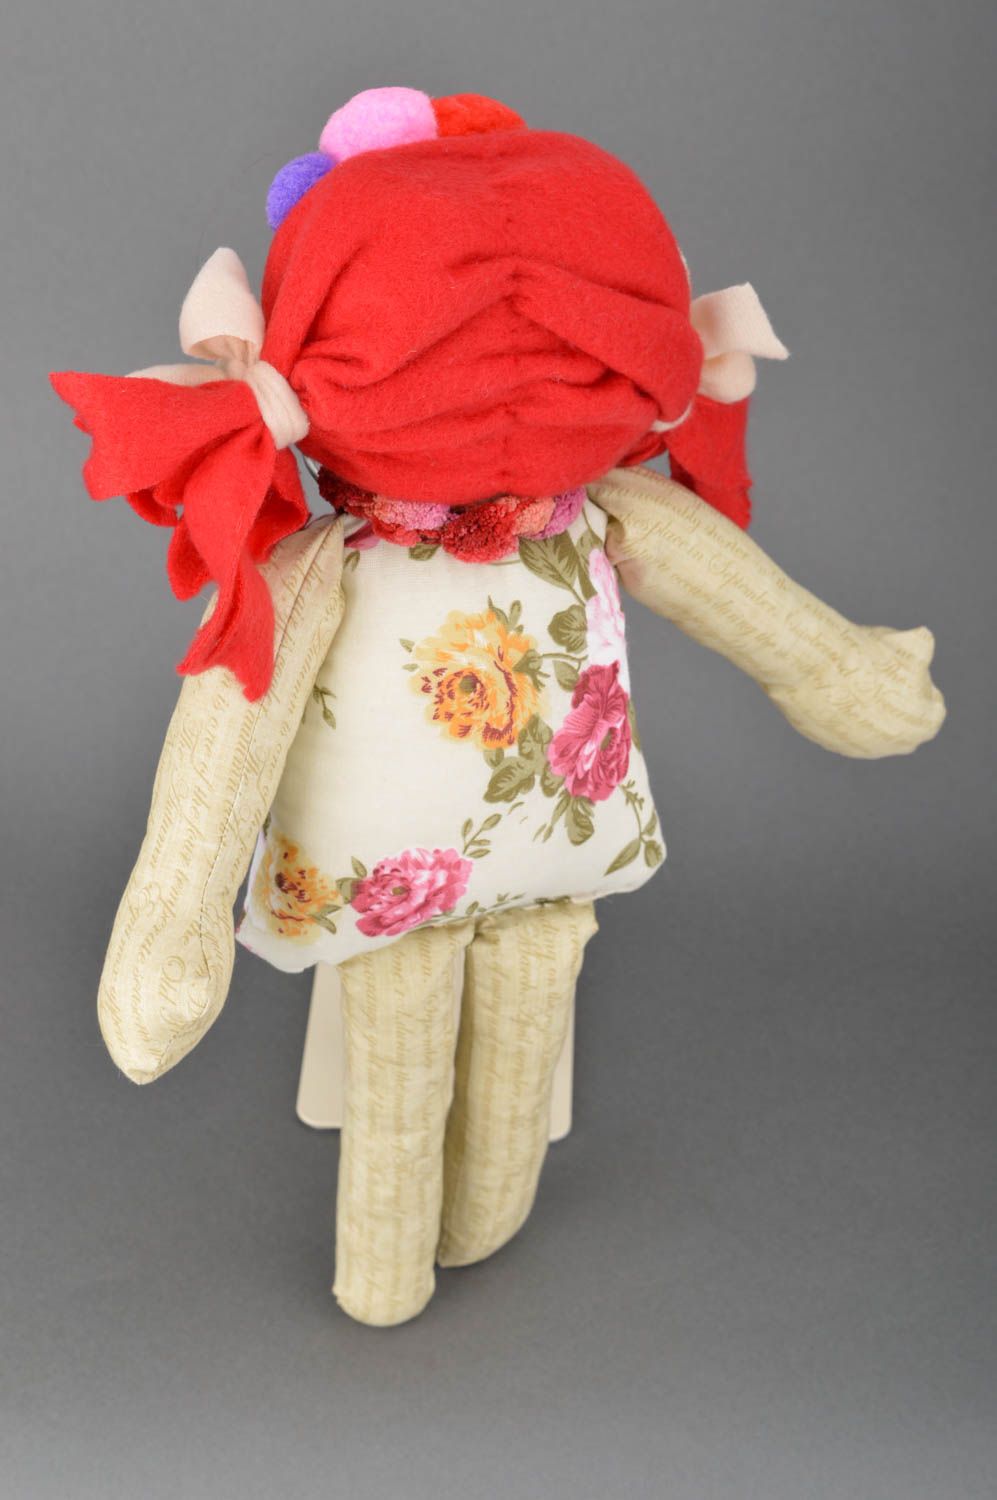 Handmade Stoff Puppe Kinder Spielzeug Geschenkidee für Mädchen originell foto 3